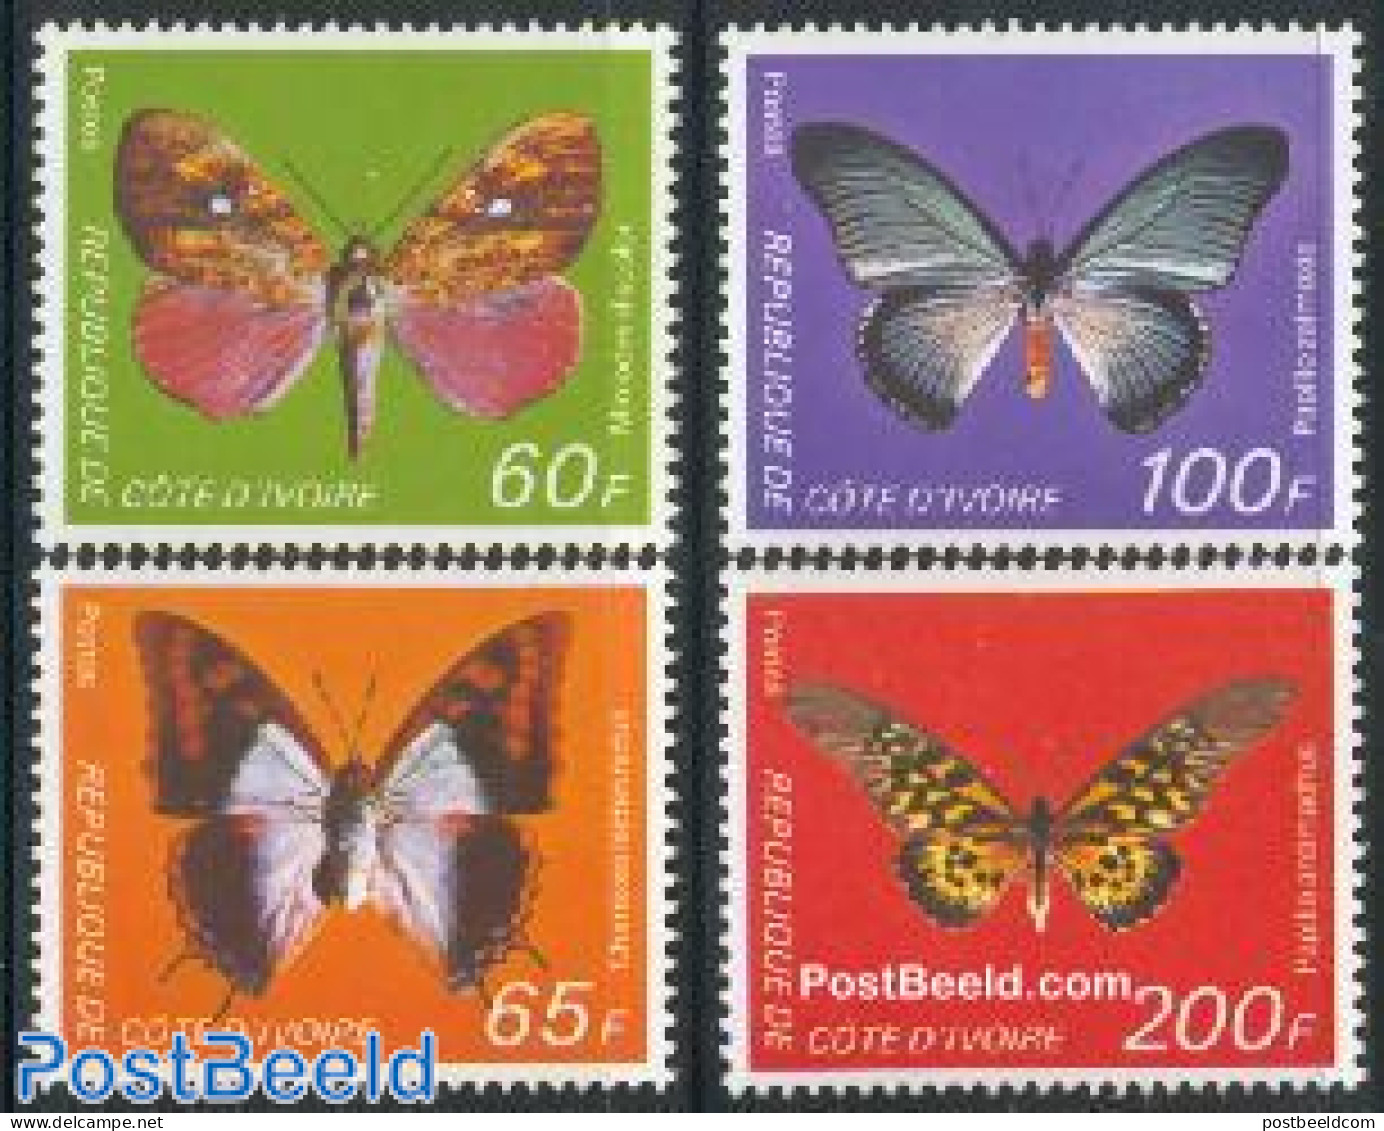 Ivory Coast 1978 Butterflies 4v, Mint NH, Nature - Butterflies - Ongebruikt